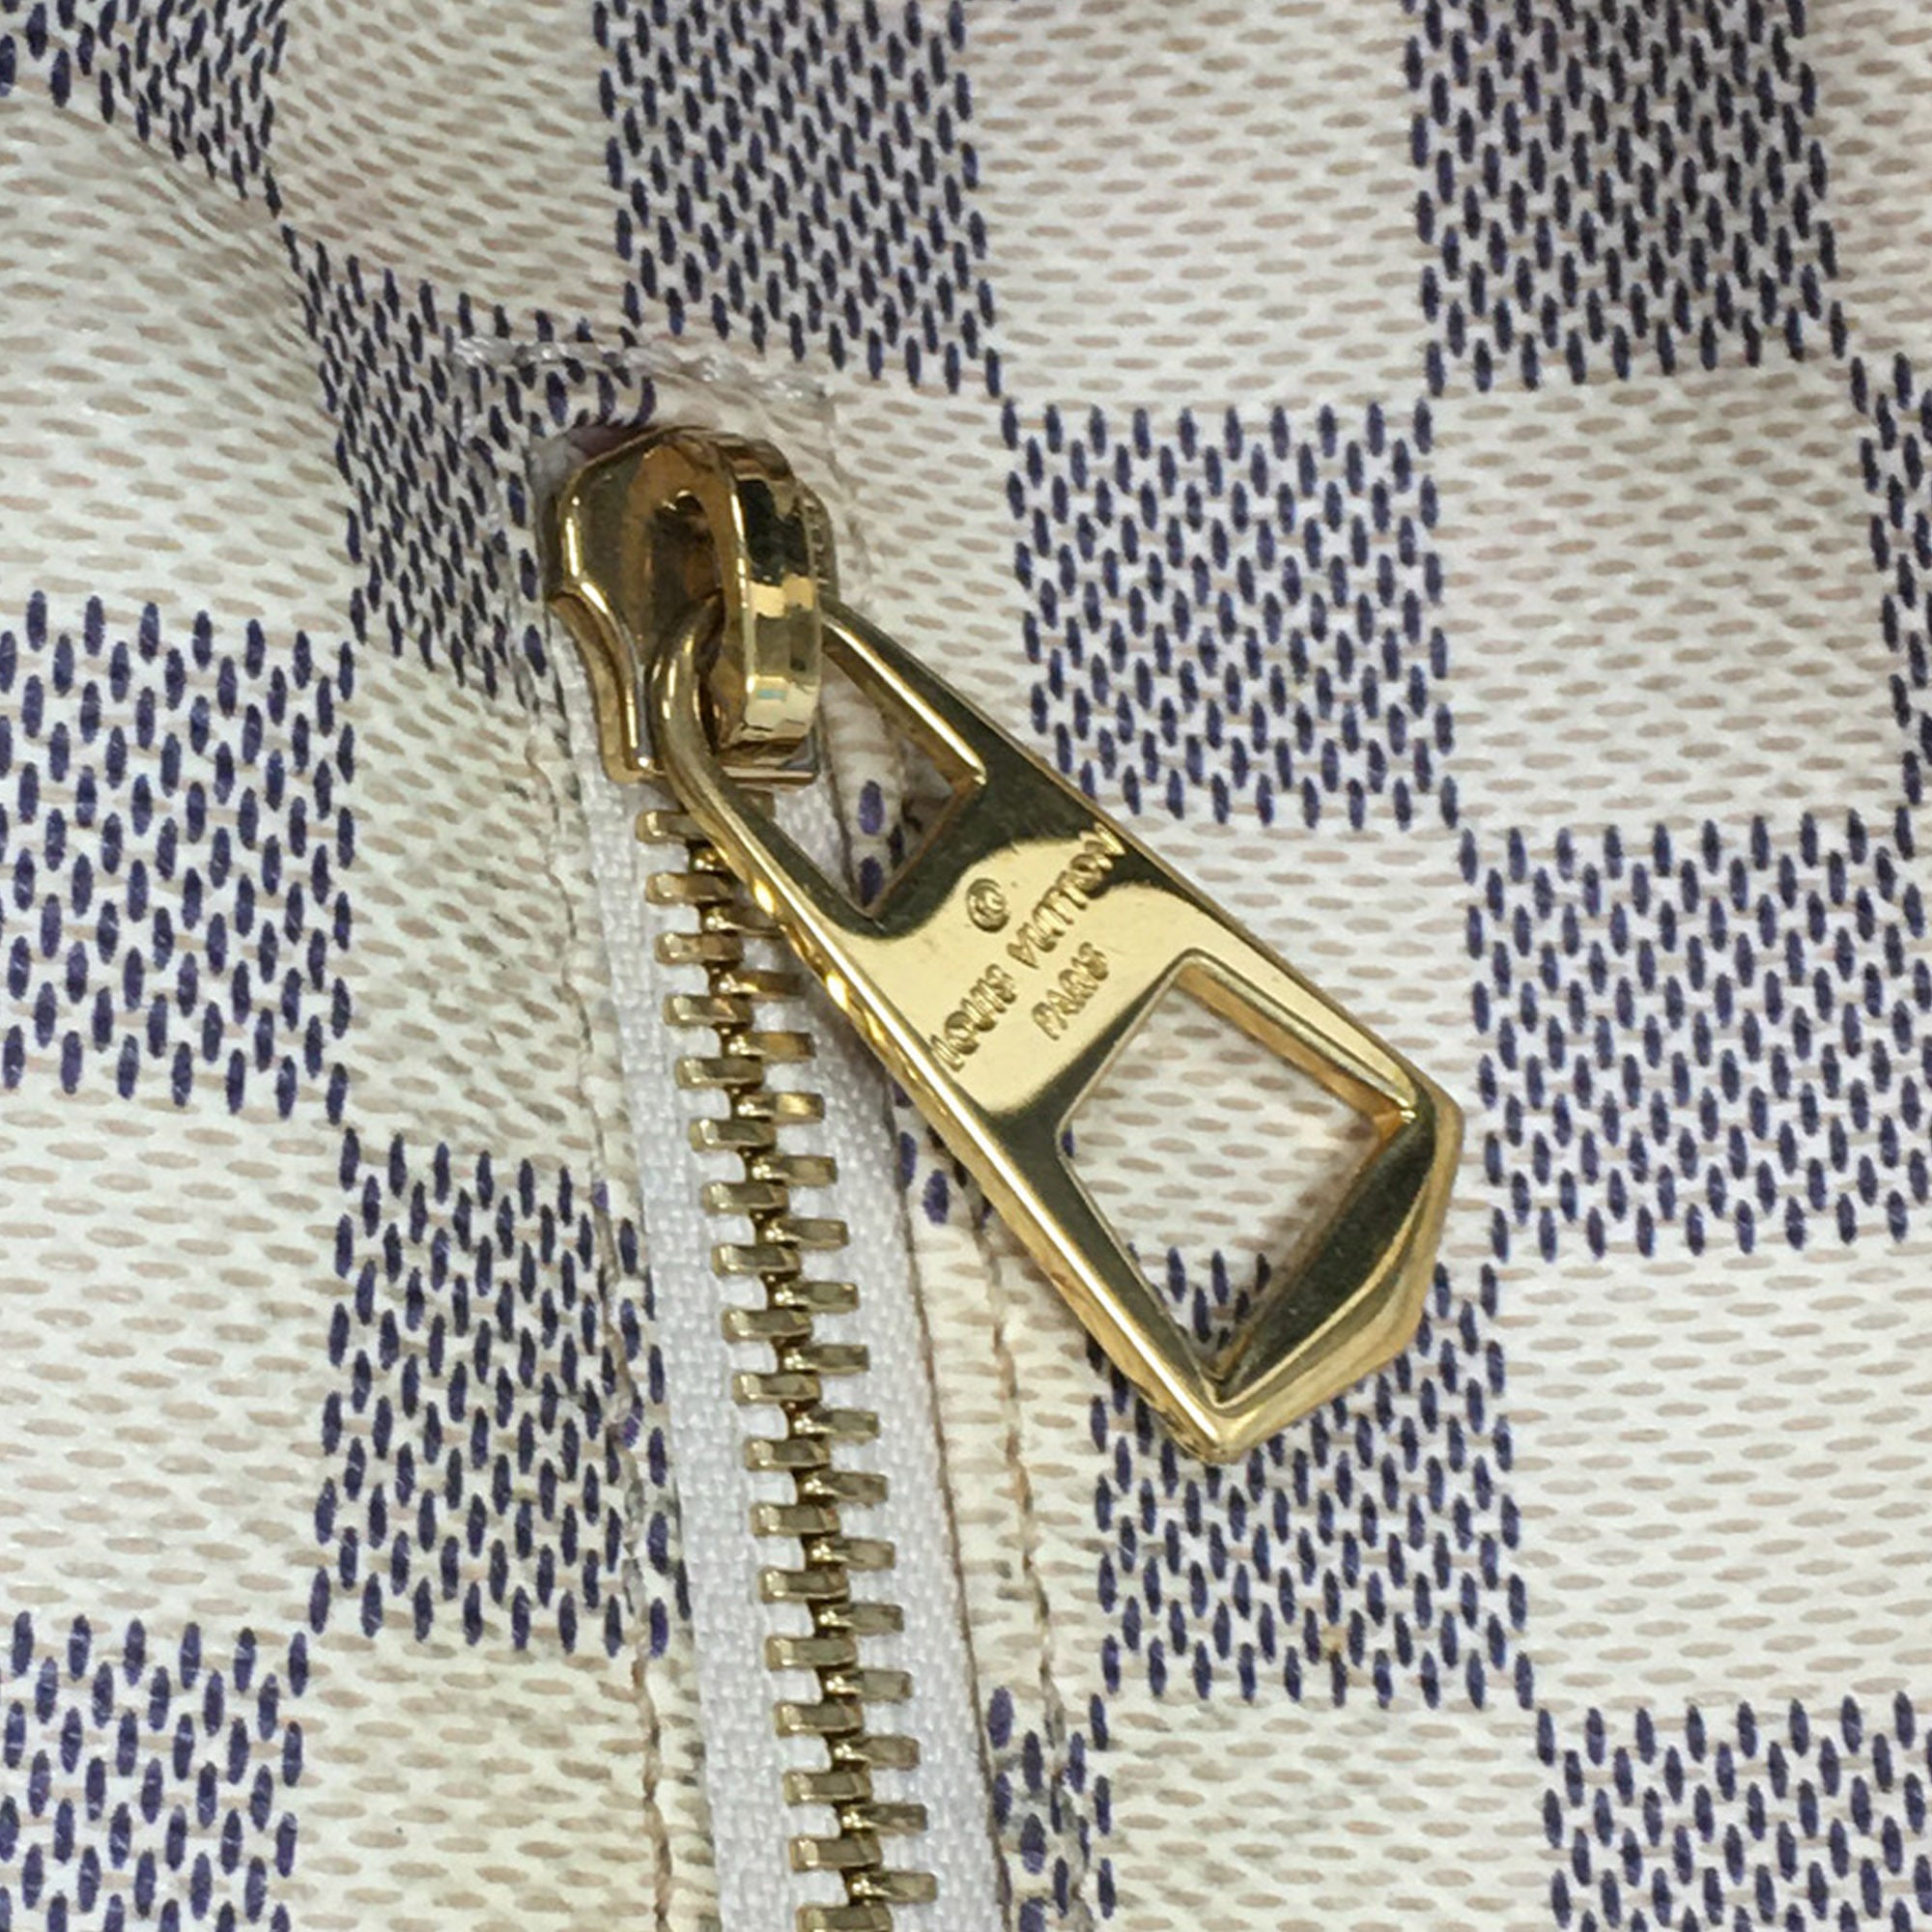 White Louis Vuitton Damier Azur Sperone BB Backpack – Designer Revival